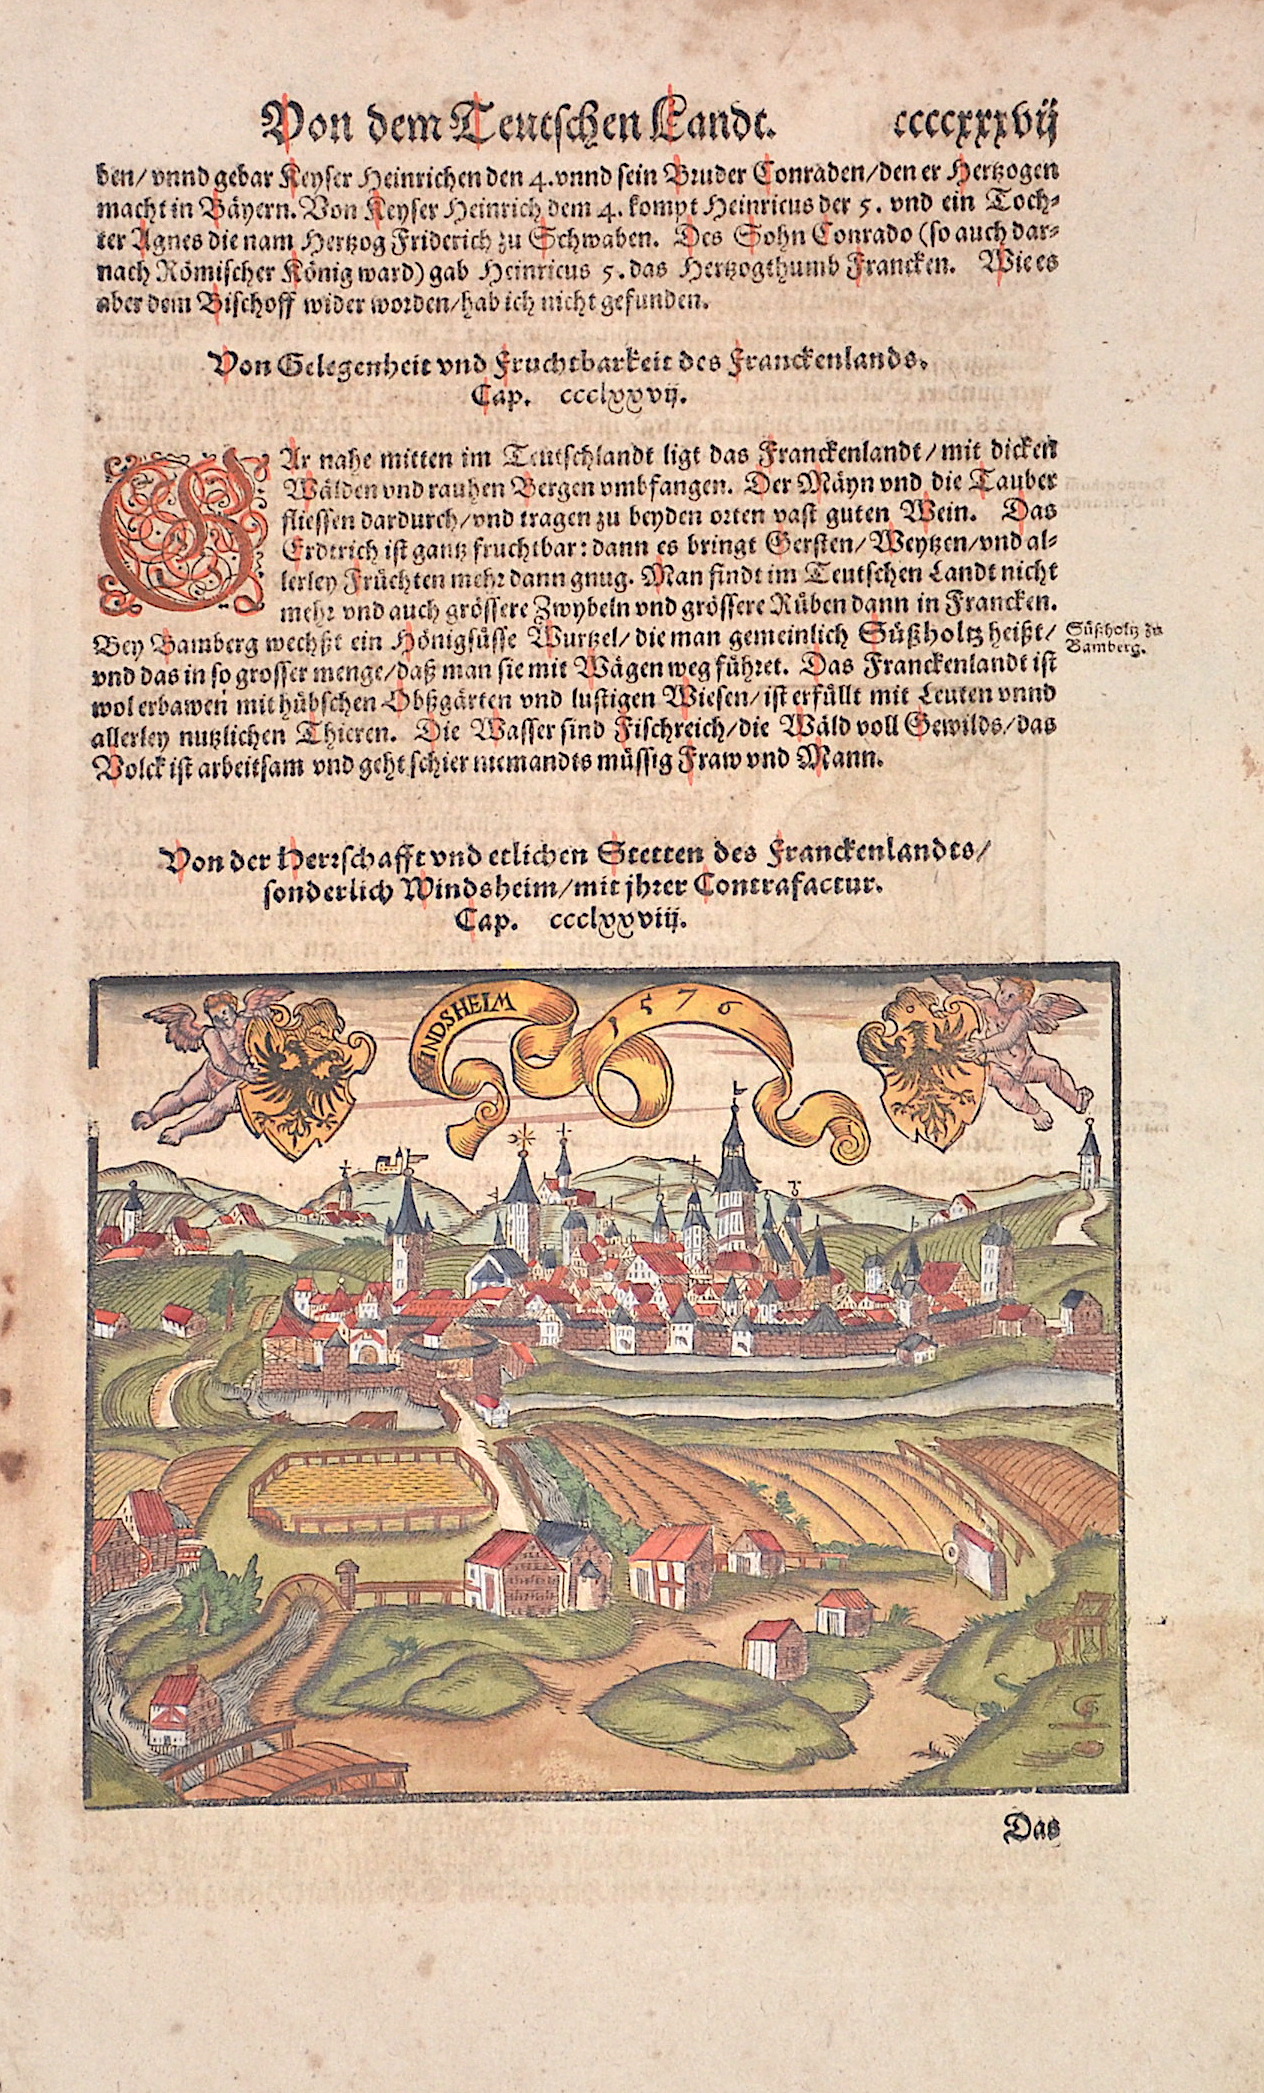 Münster  Von der Herschafft und etlichen Stetten des Franckenlandts, sonderlich Windsheim, mit ihrer Contrafactur.